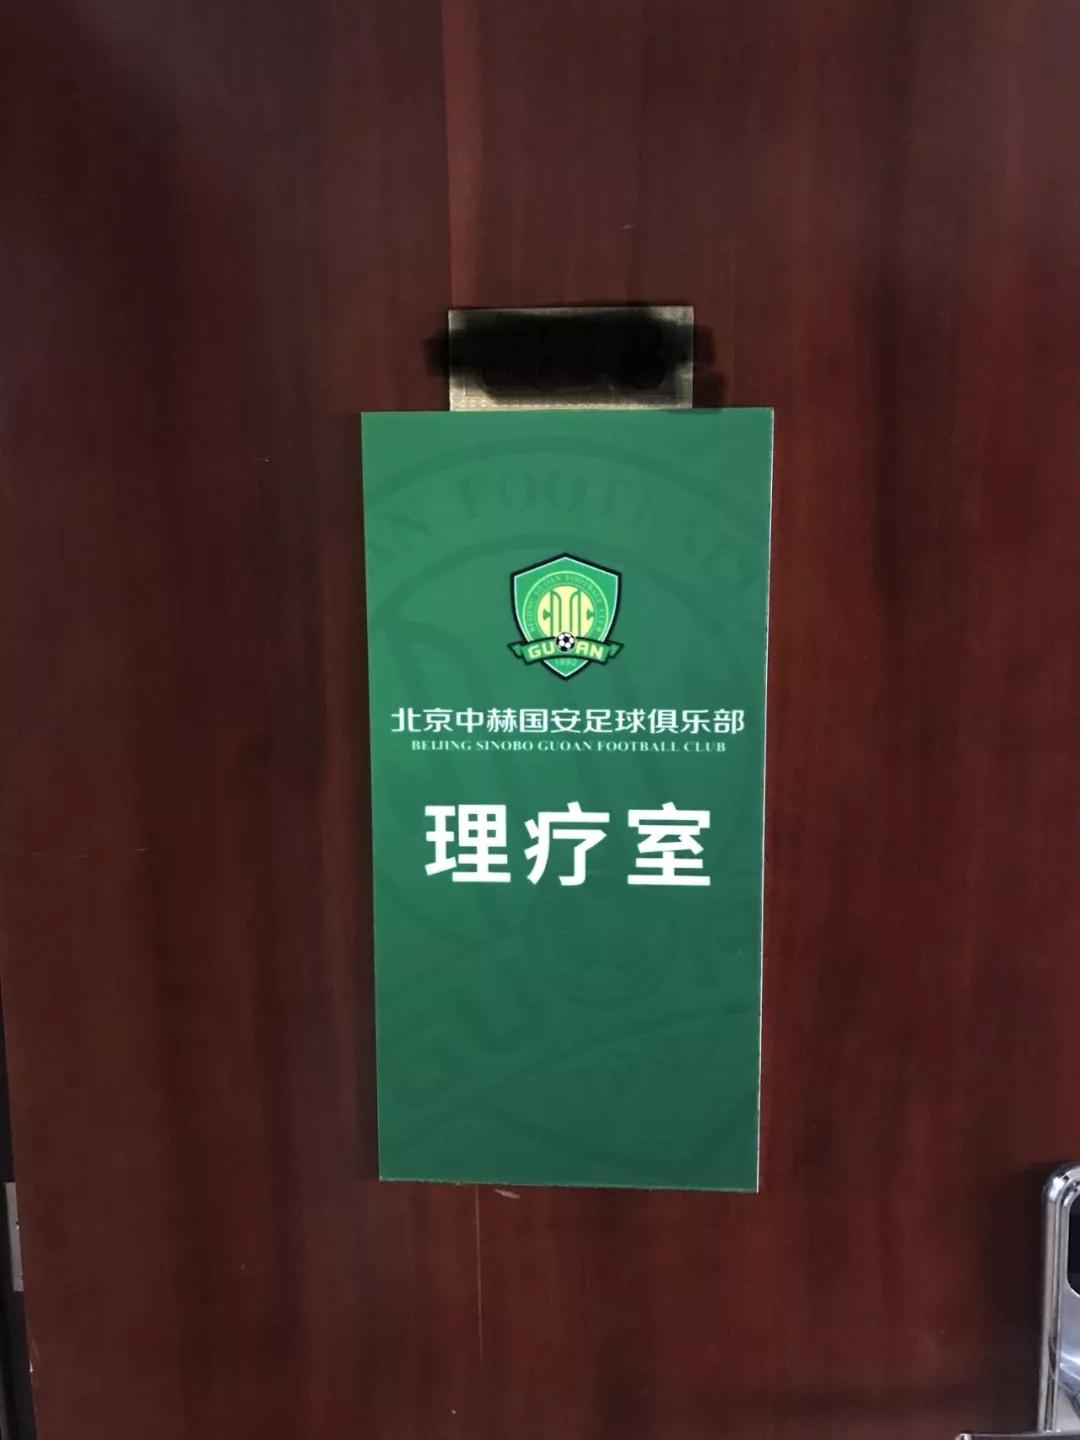 北京中赫国安足球俱乐部与百全毫米波达成合作